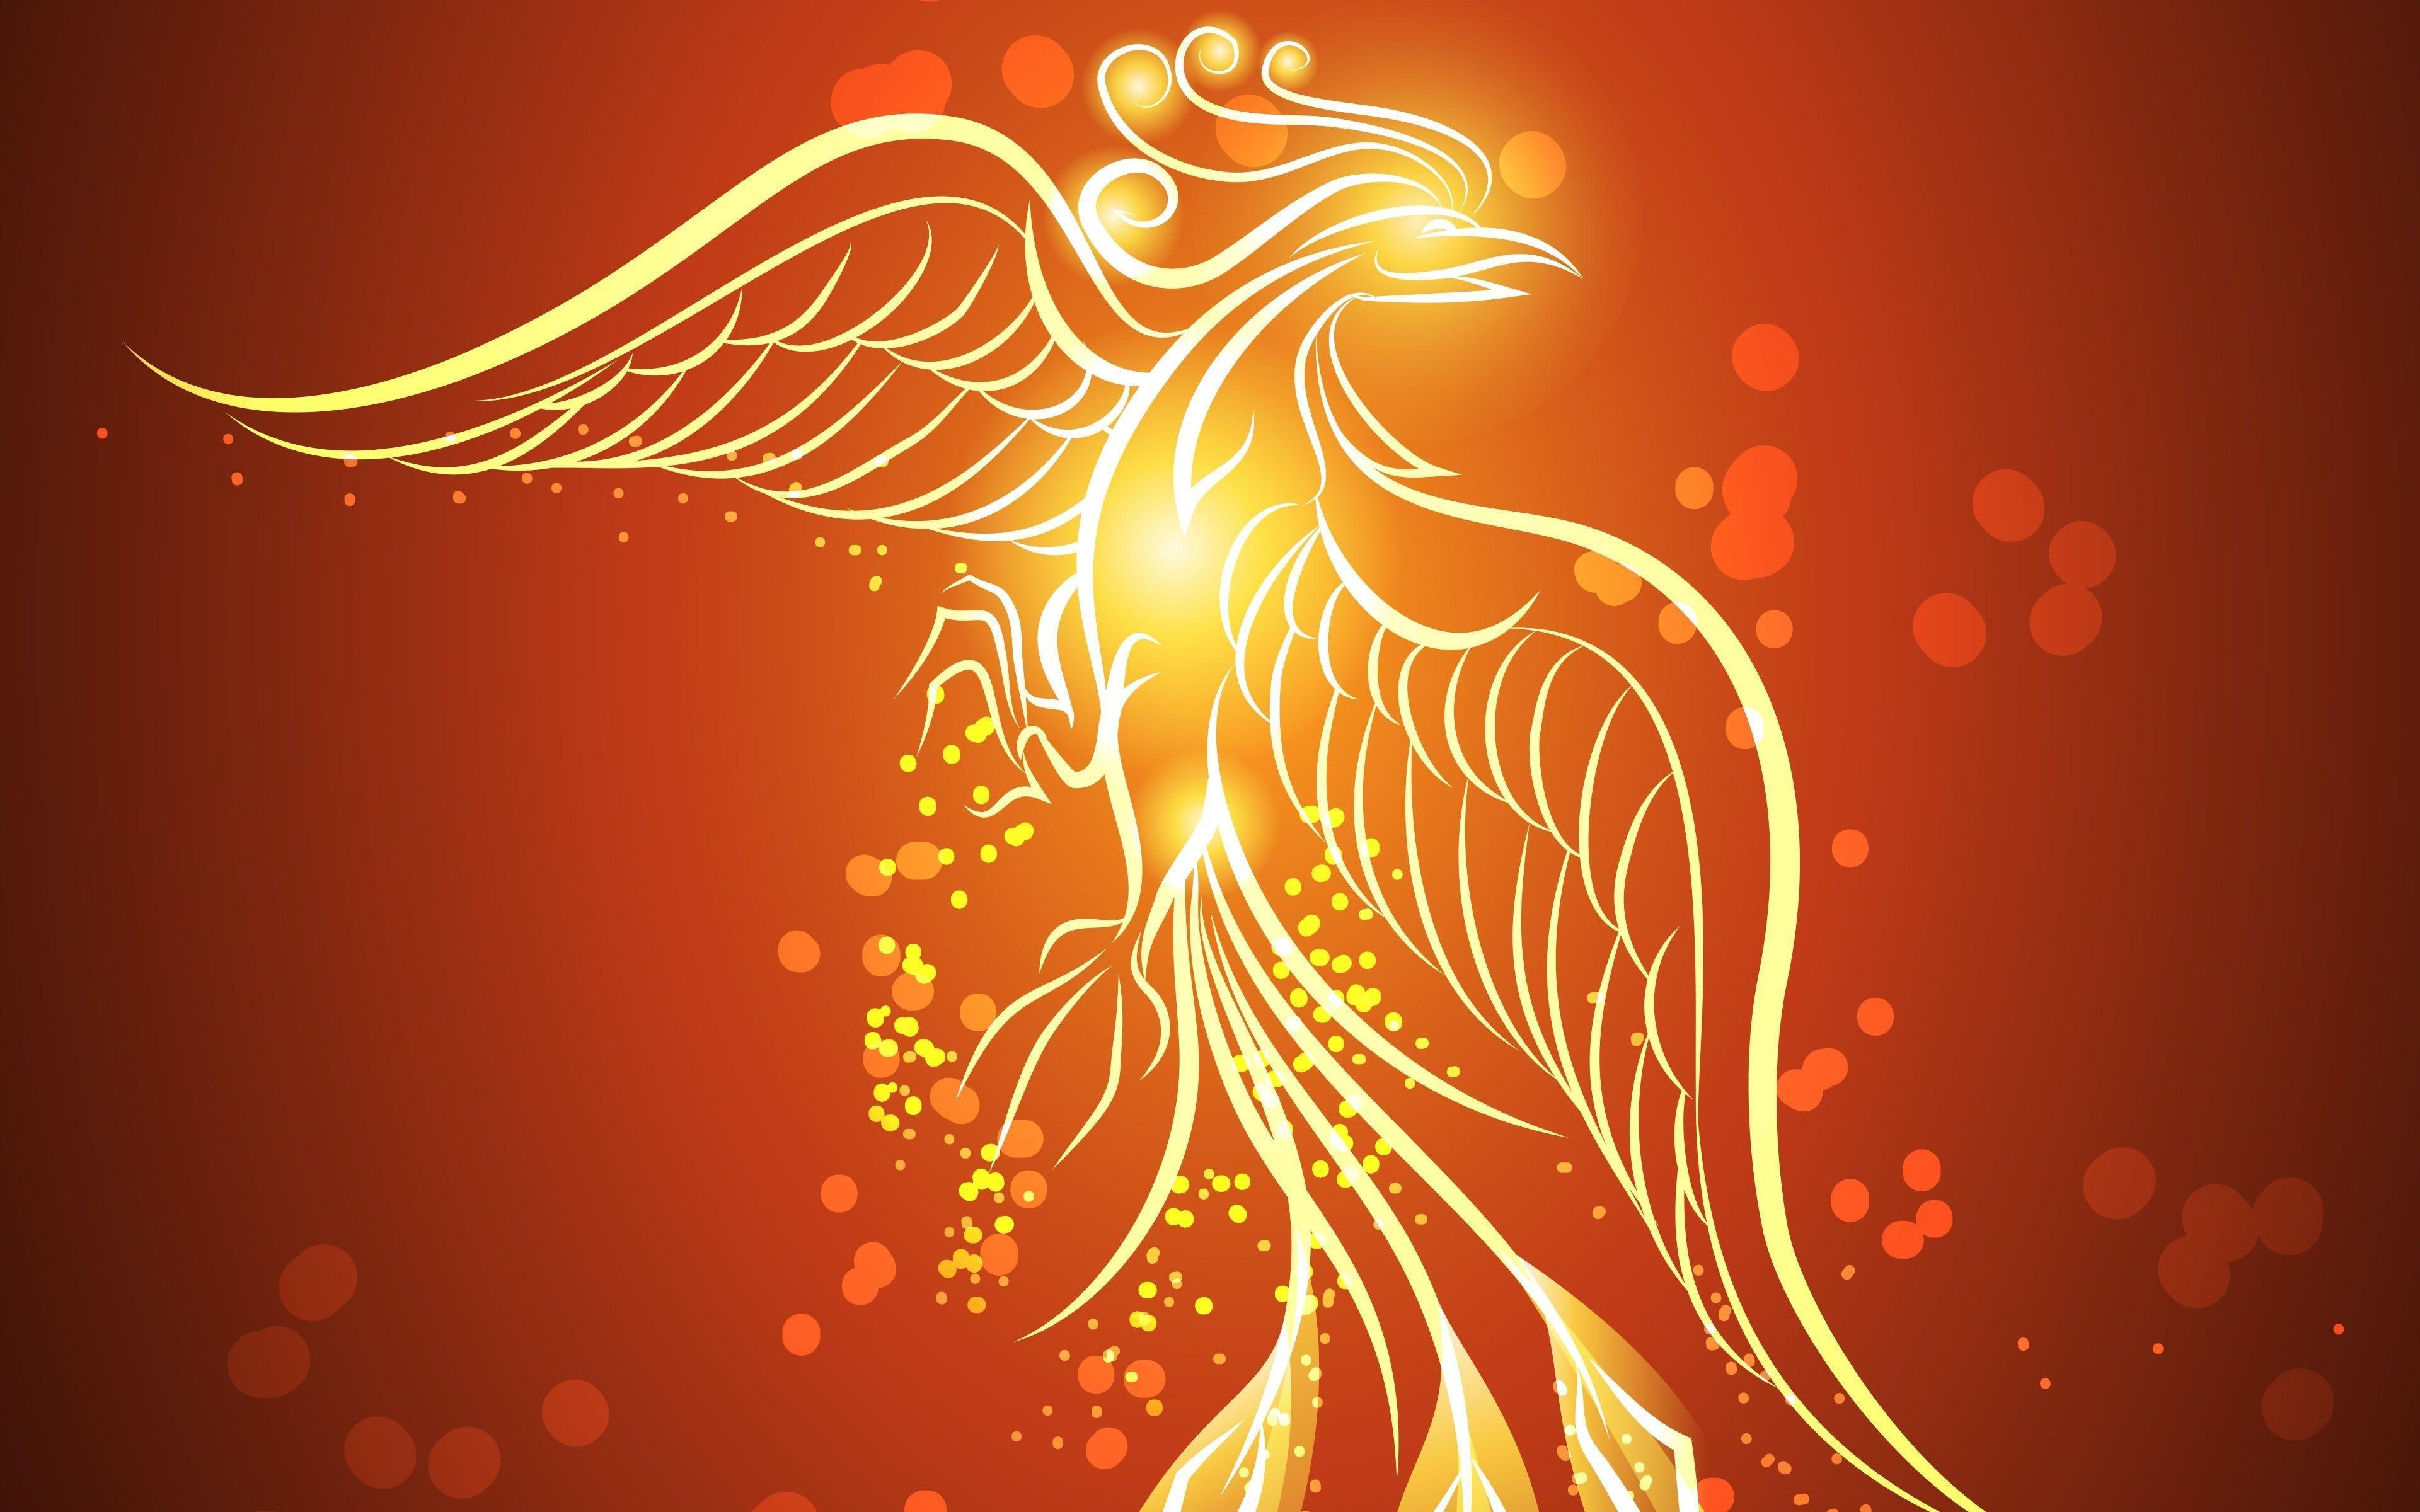 Lửa Đốt Phoenix Bird Với Nền Đen Hình minh họa Sẵn có  Tải xuống Hình ảnh  Ngay bây giờ  Phượng Hoàng thần Thoại  Nhân vật hư cấu Phoenix 